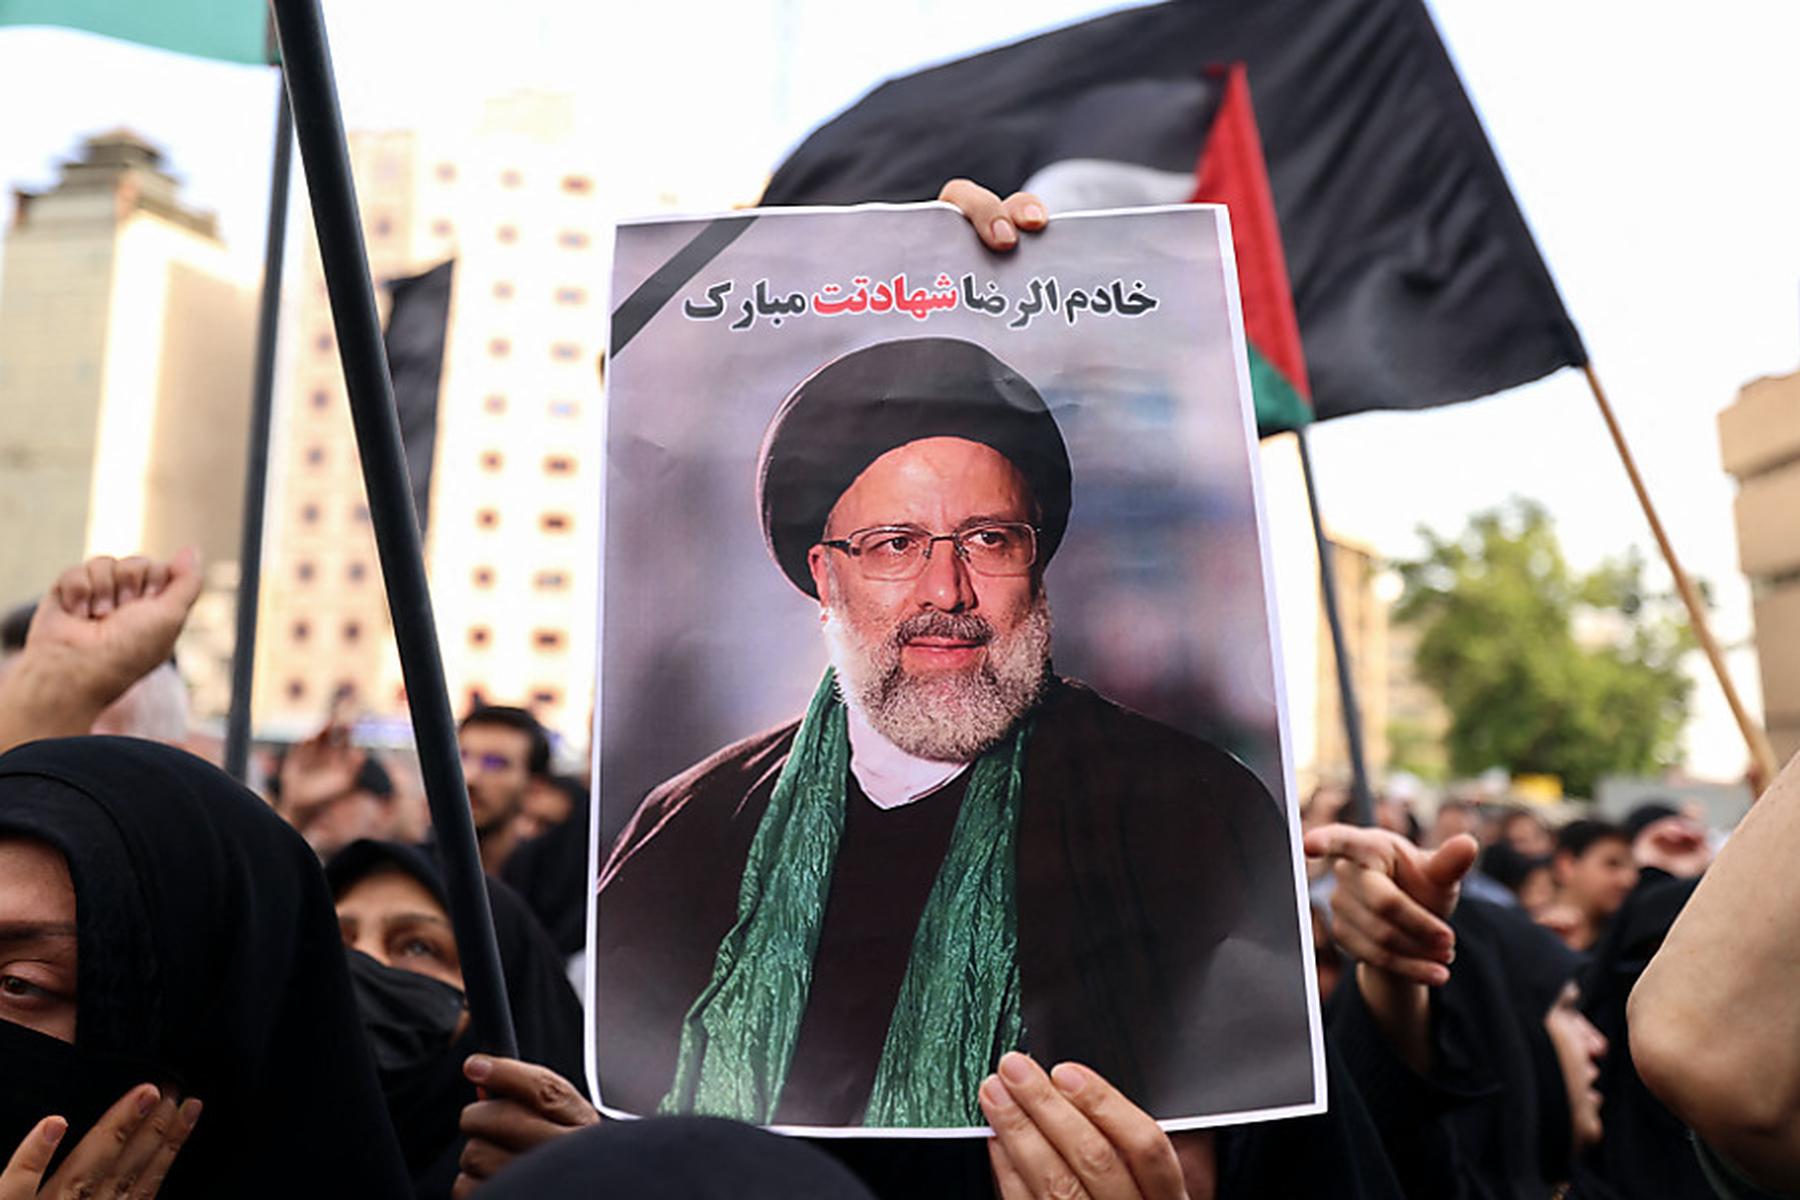 Tod von Präsident und Außenminister: Trauerfeiern im Iran